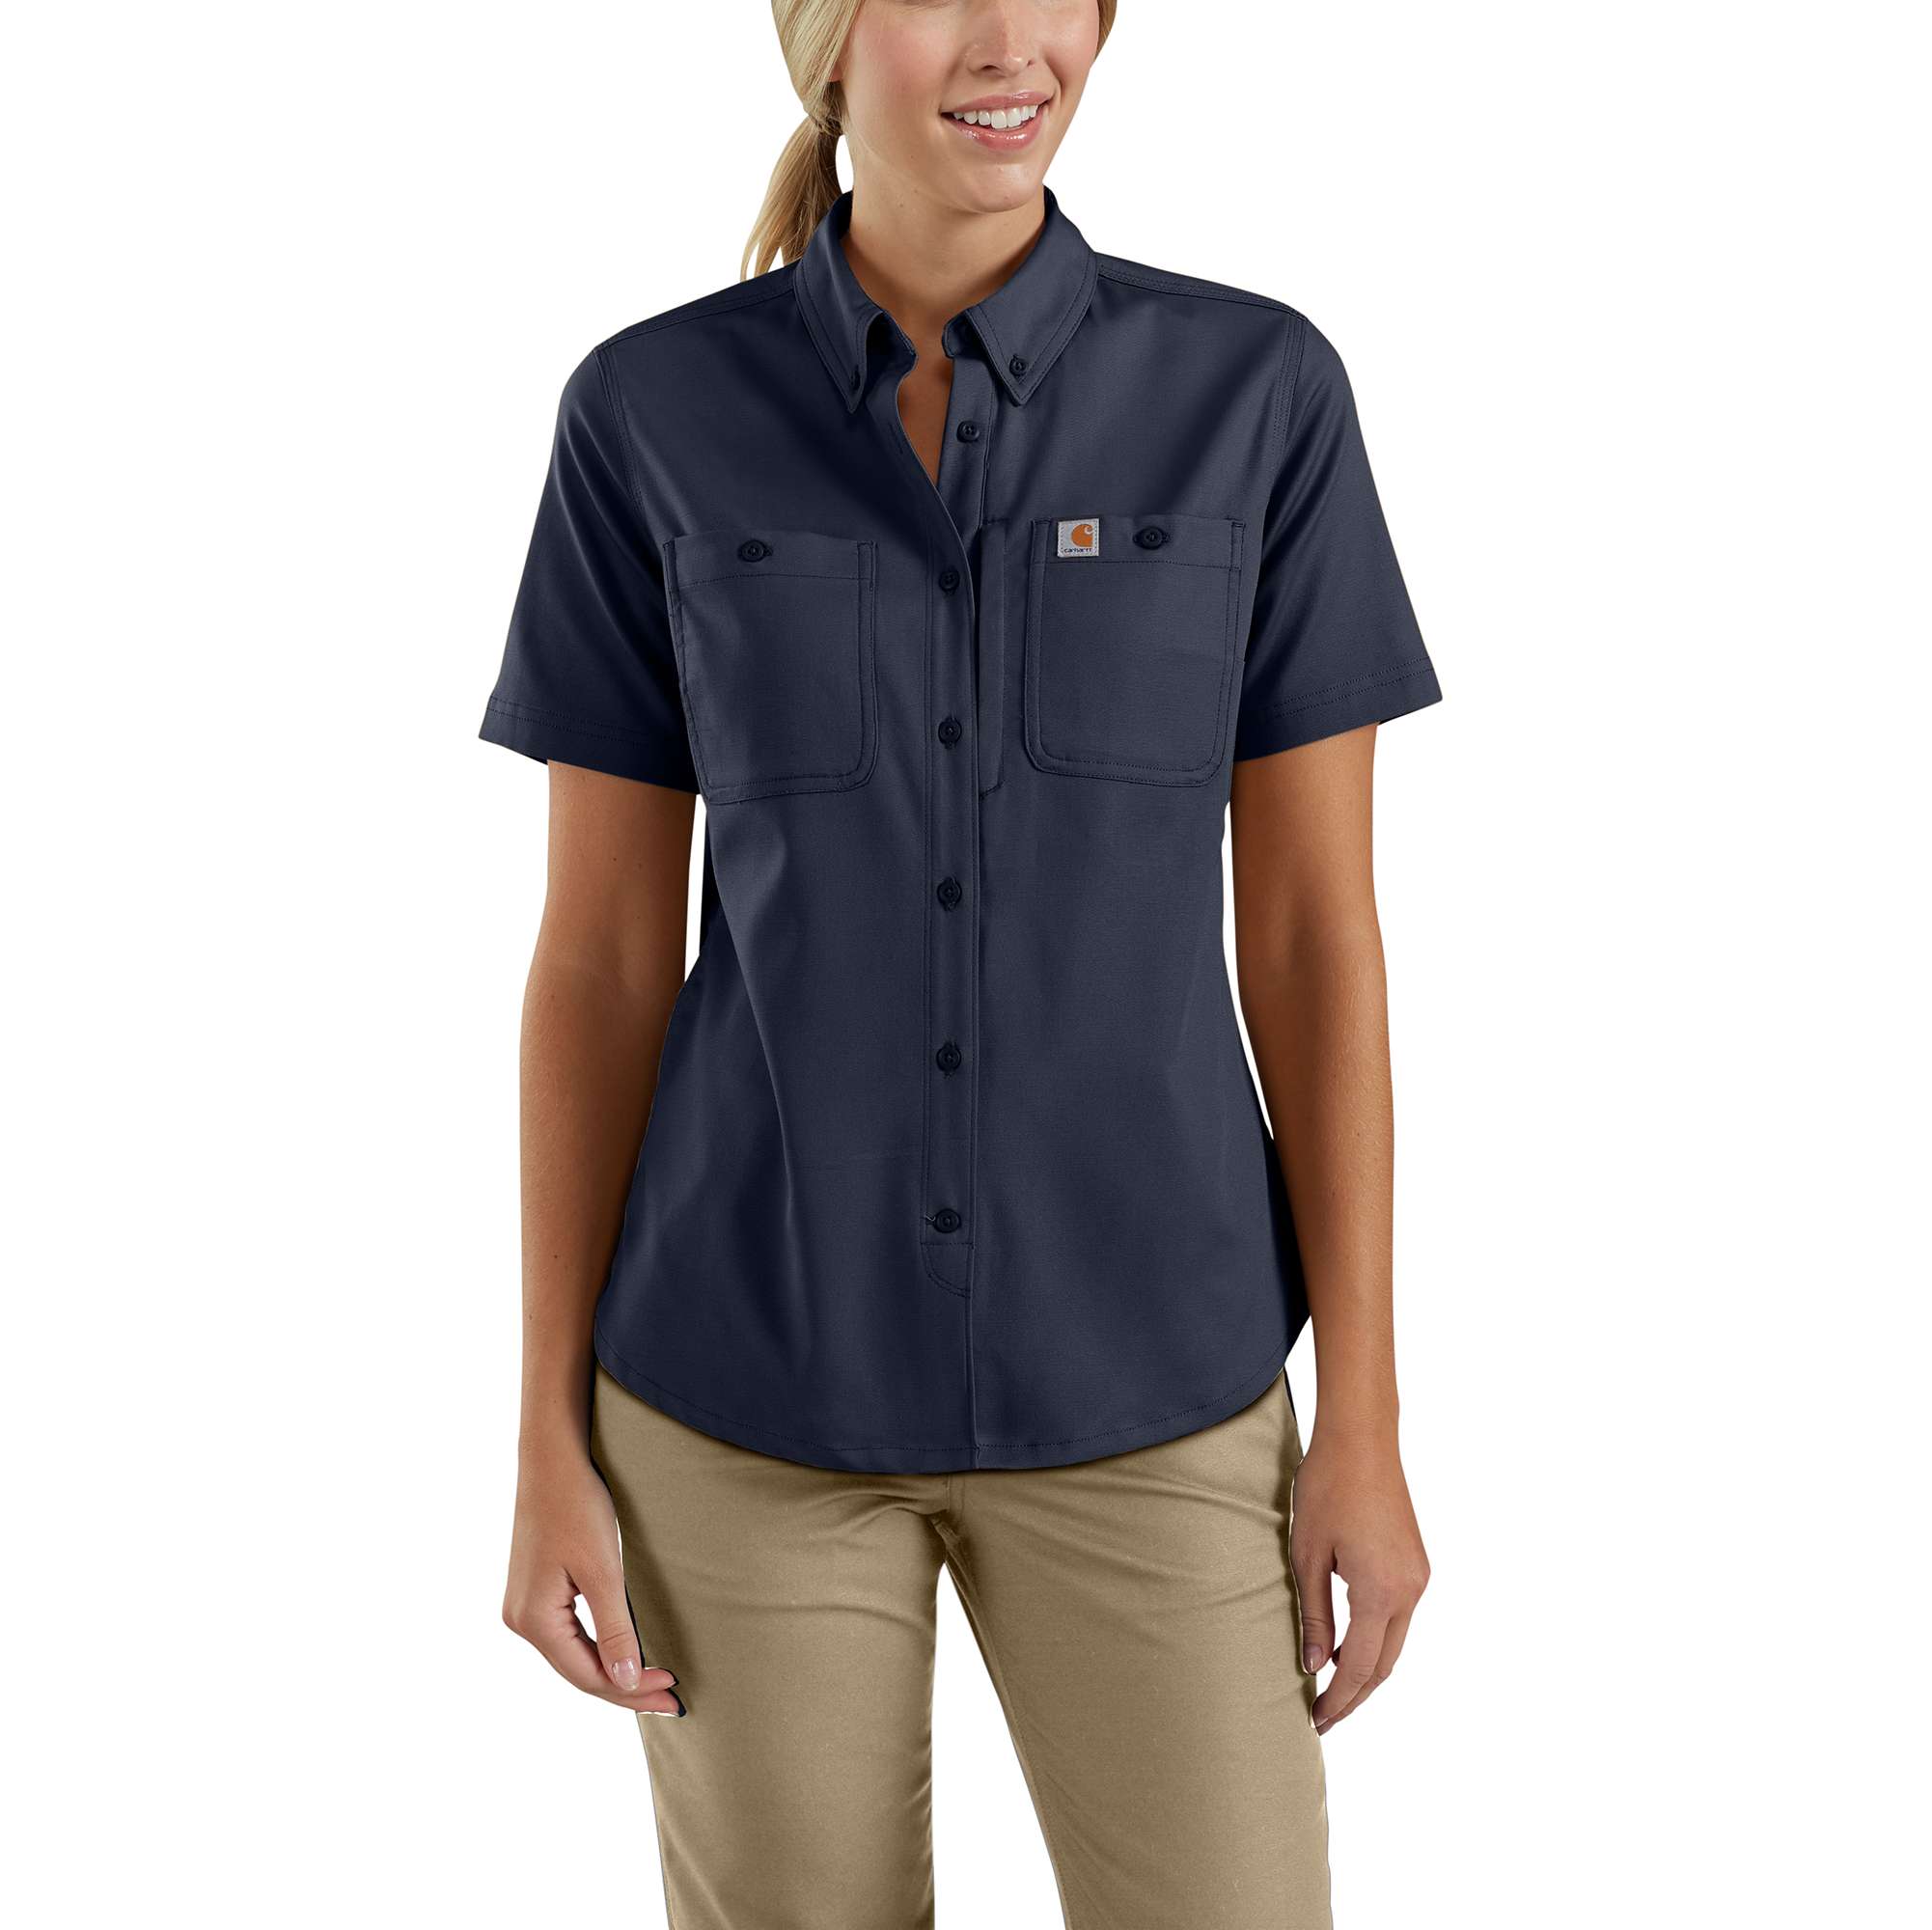 Carhartt Rugged Series Short Sleeve Custom Shirts, Dark Khaki